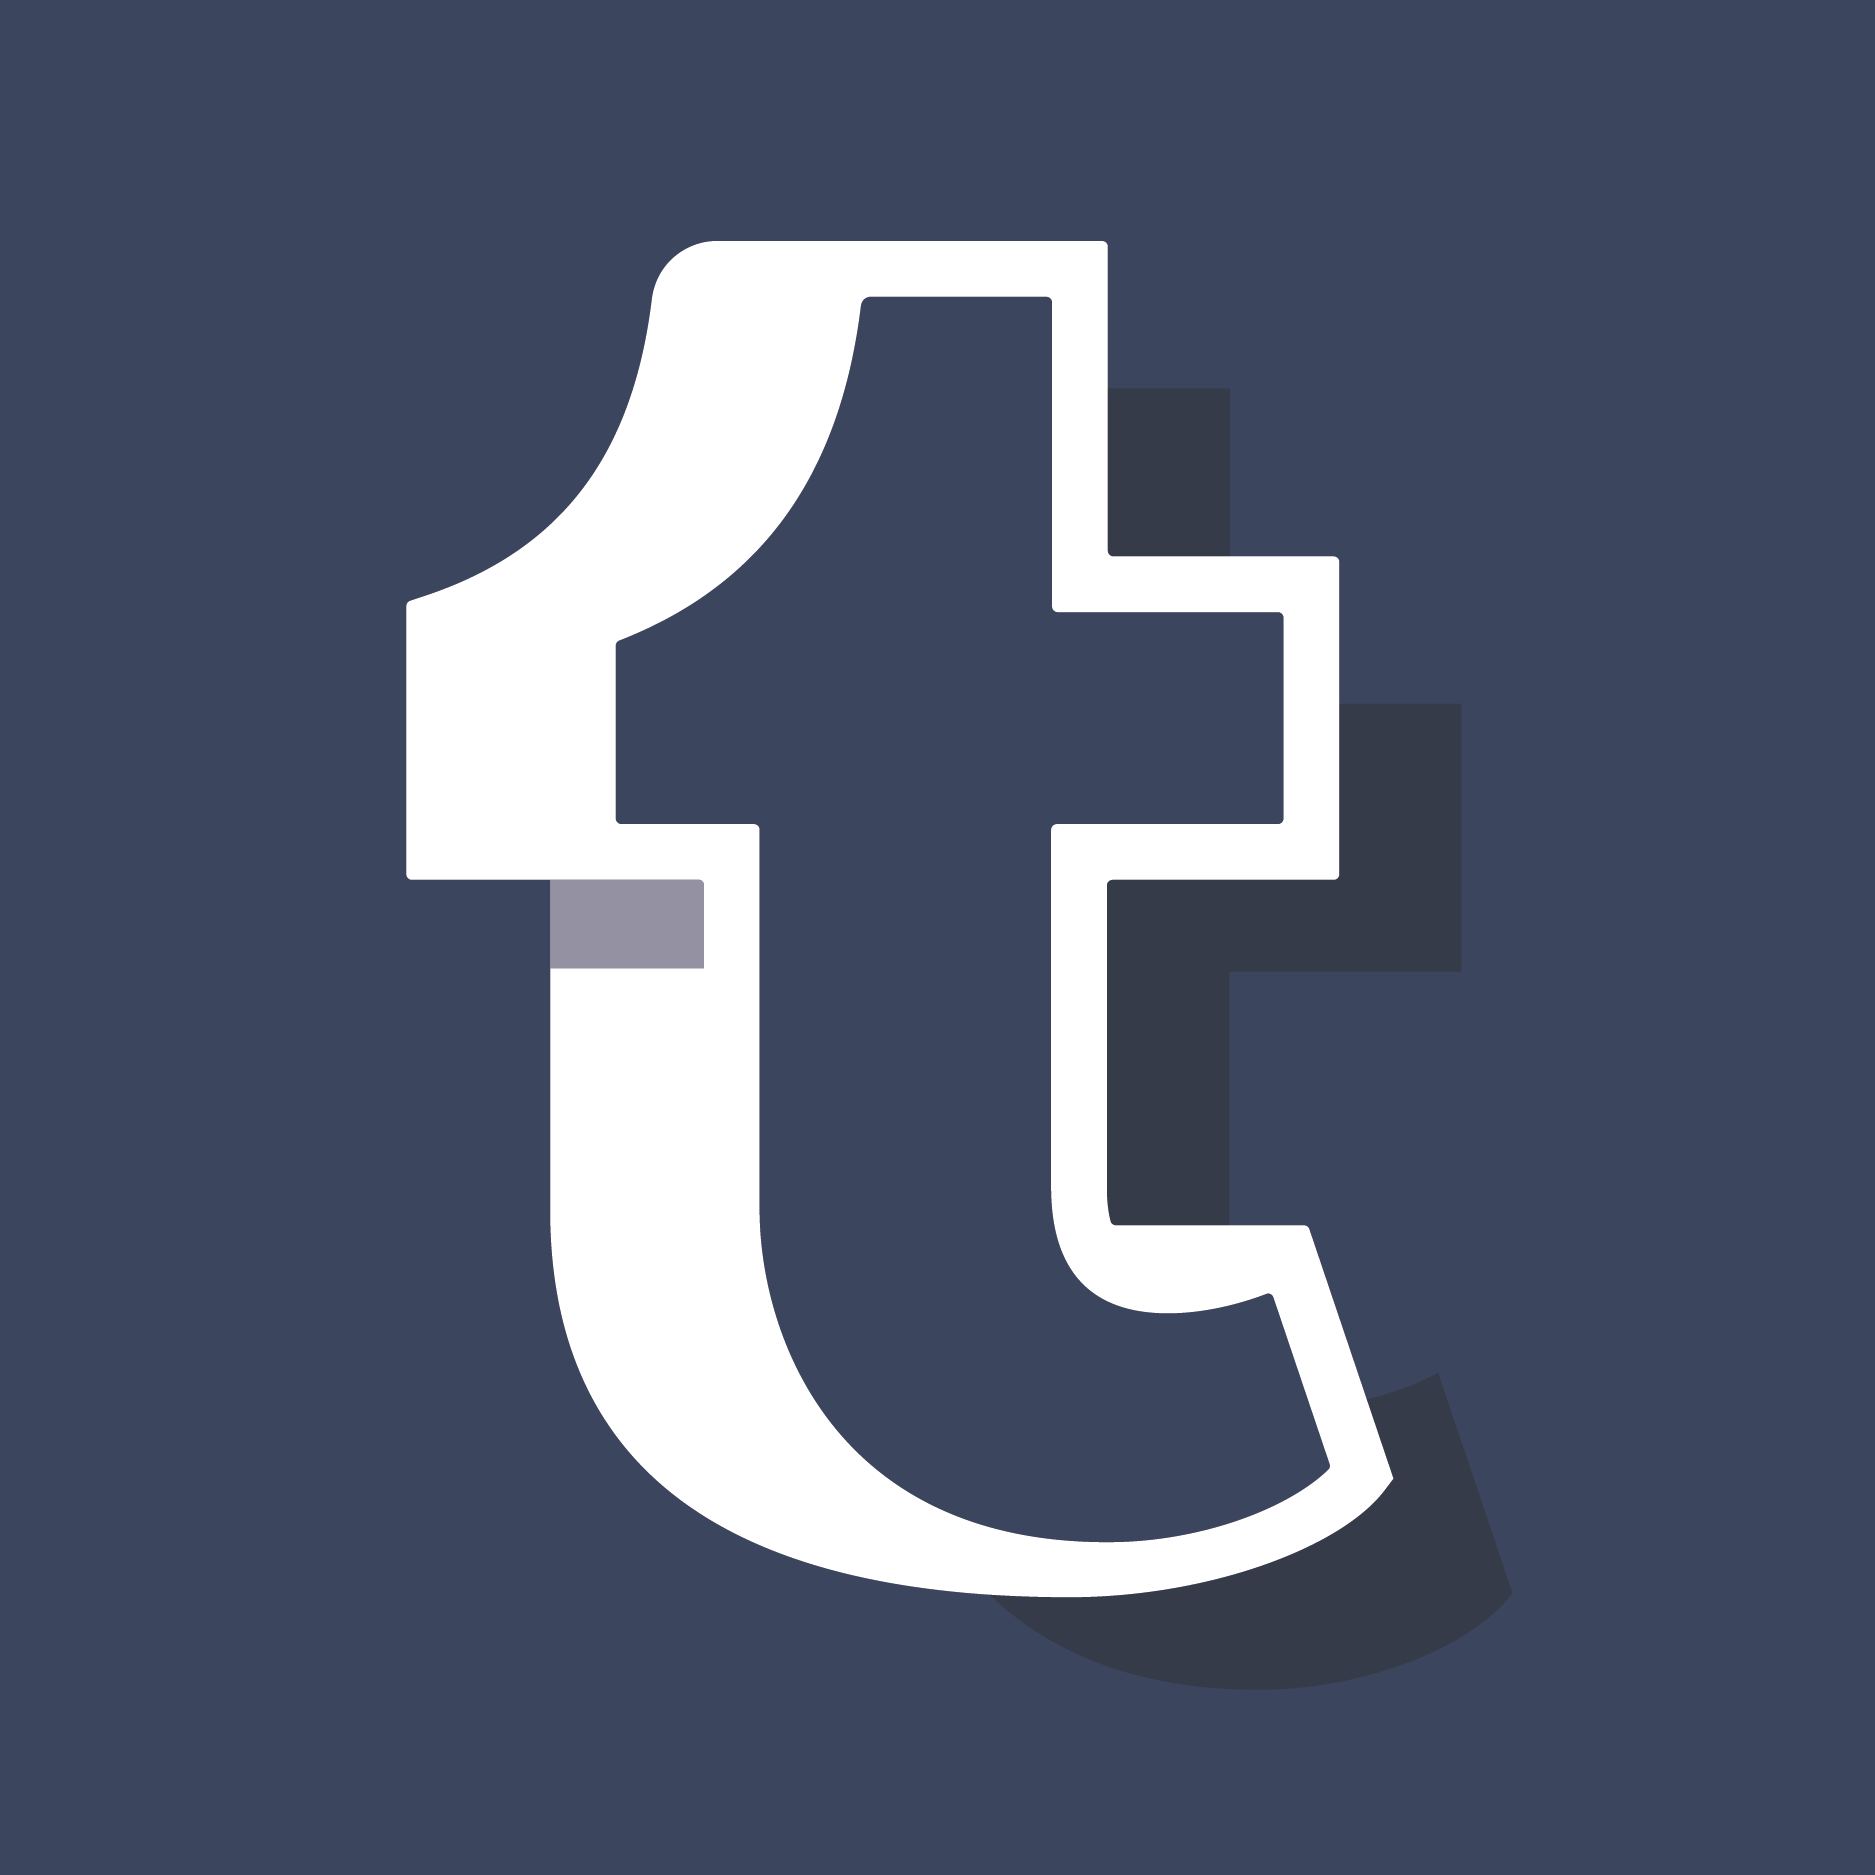 tumblr logo download